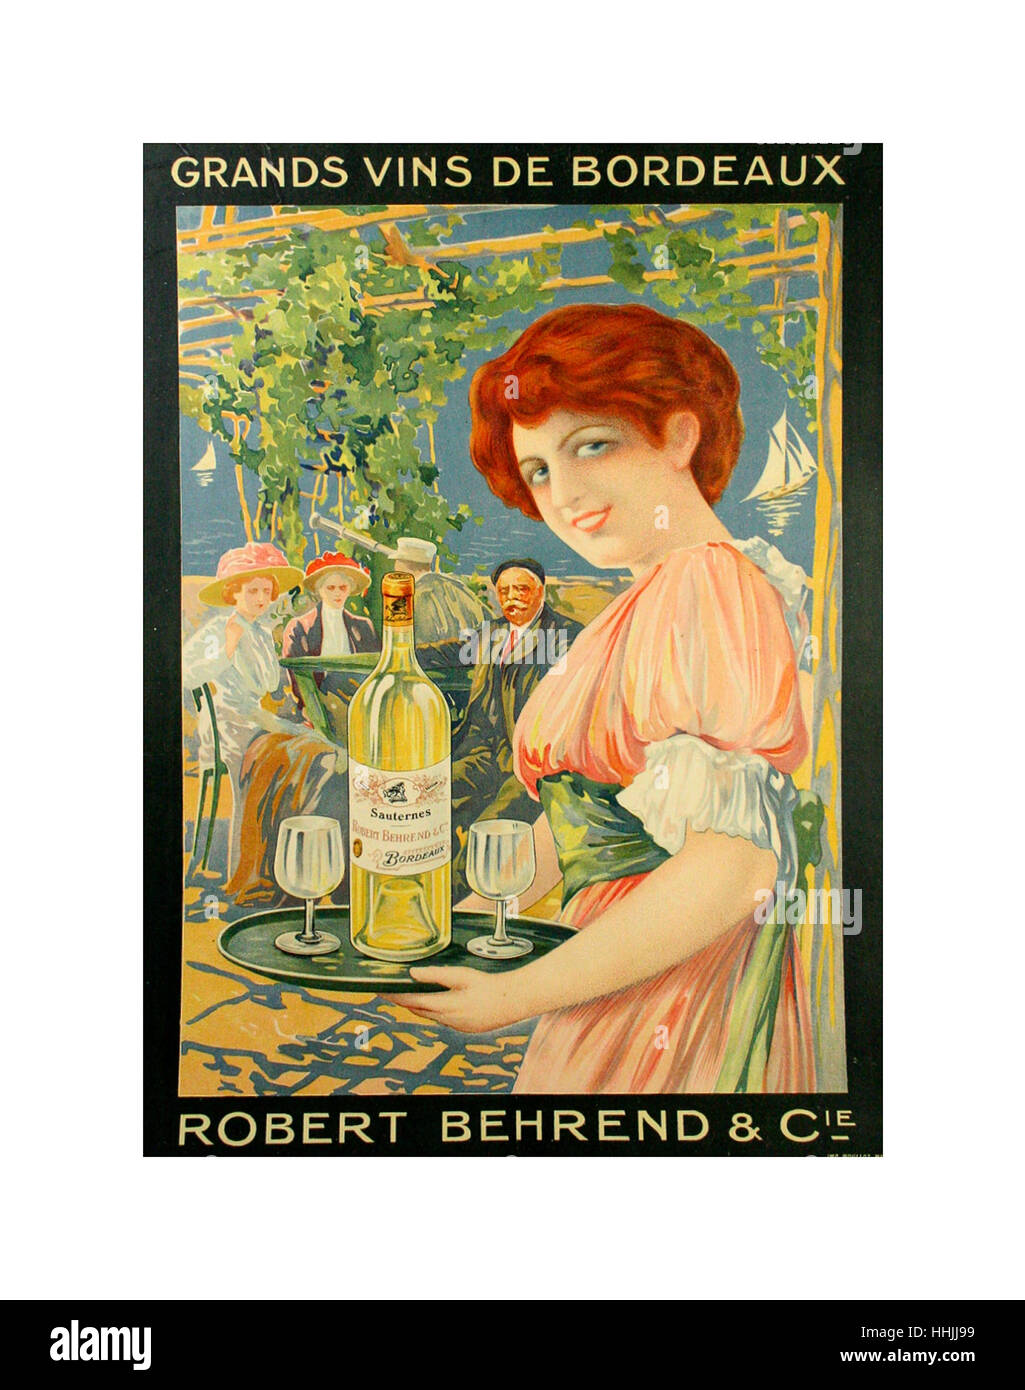 Affiche Vin Bordeaux - Affiche Vintage